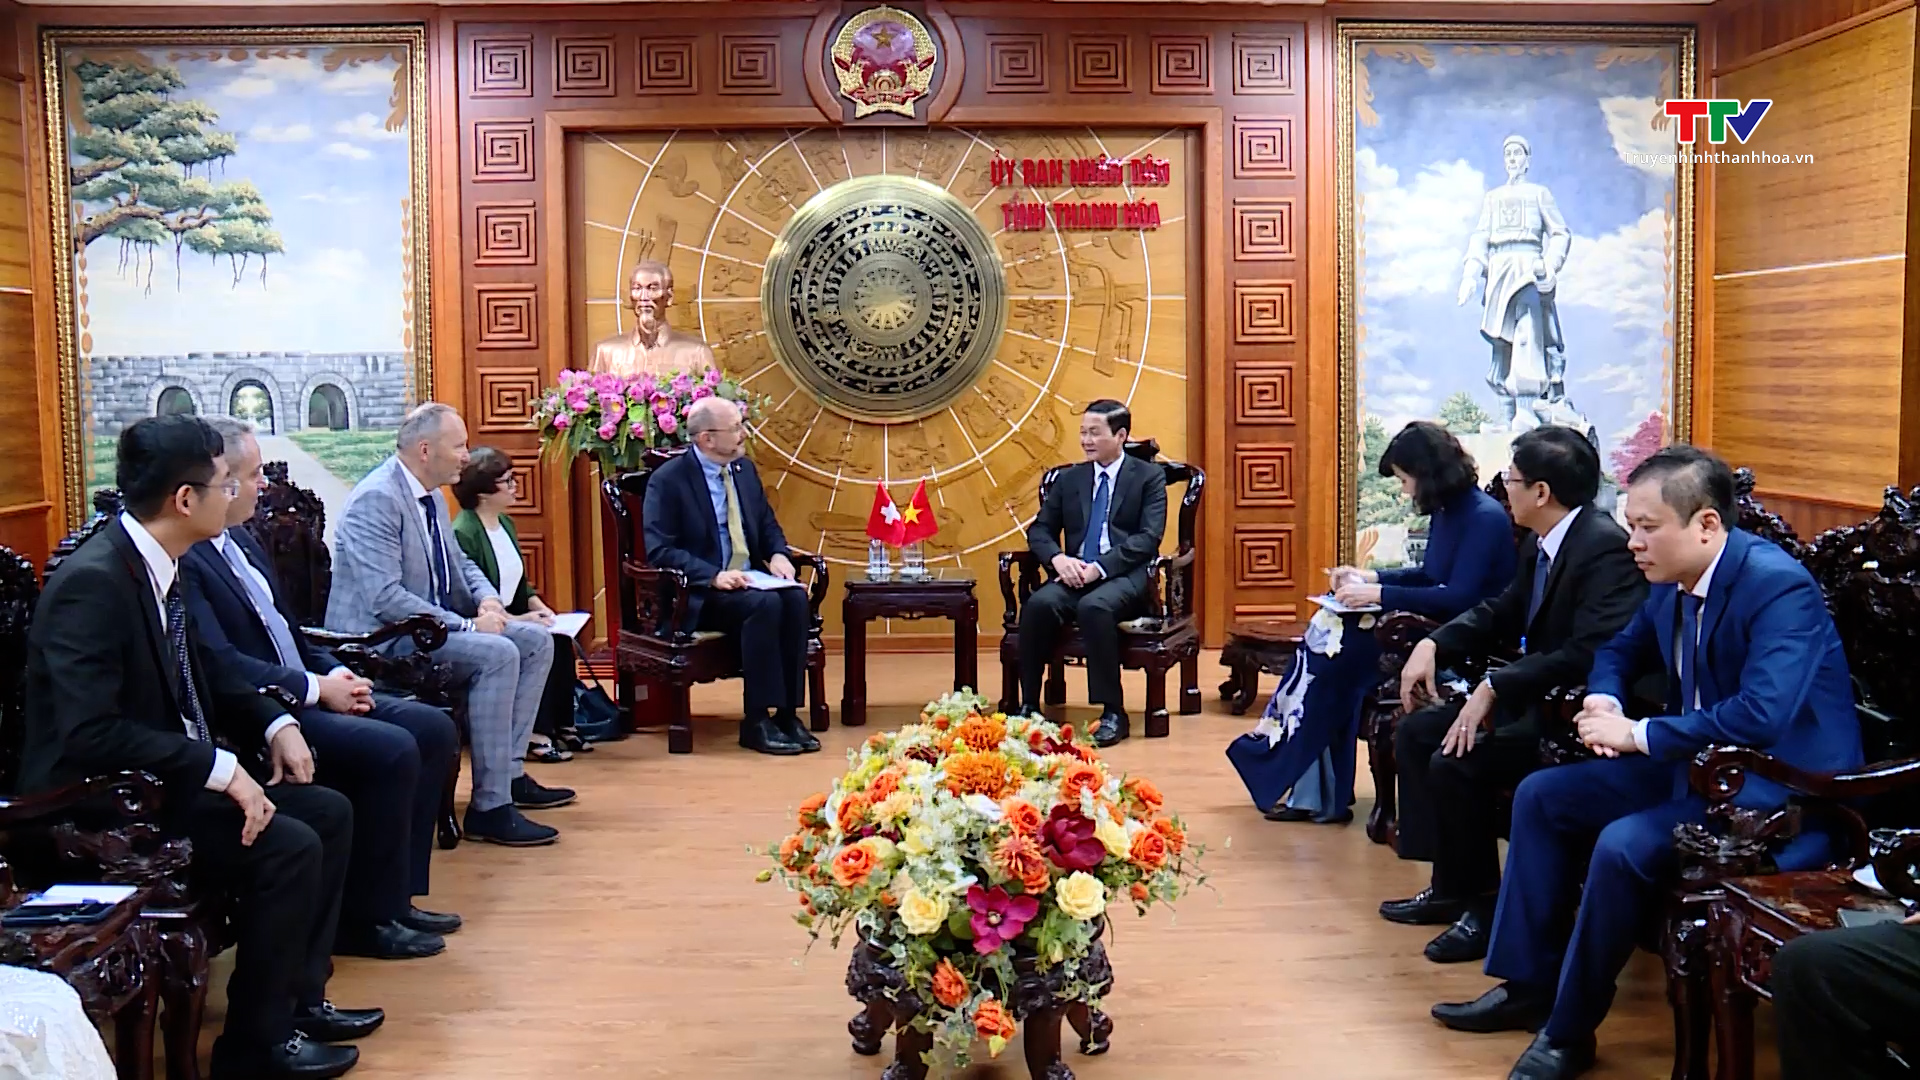 Chủ tịch Ủy ban Nhân dân tỉnh Đỗ Minh Tuấn tiếp xã giao Đại sứ đặc mệnh toàn quyền Nhà nước Thụy Sỹ tại Việt Nam- Ảnh 1.